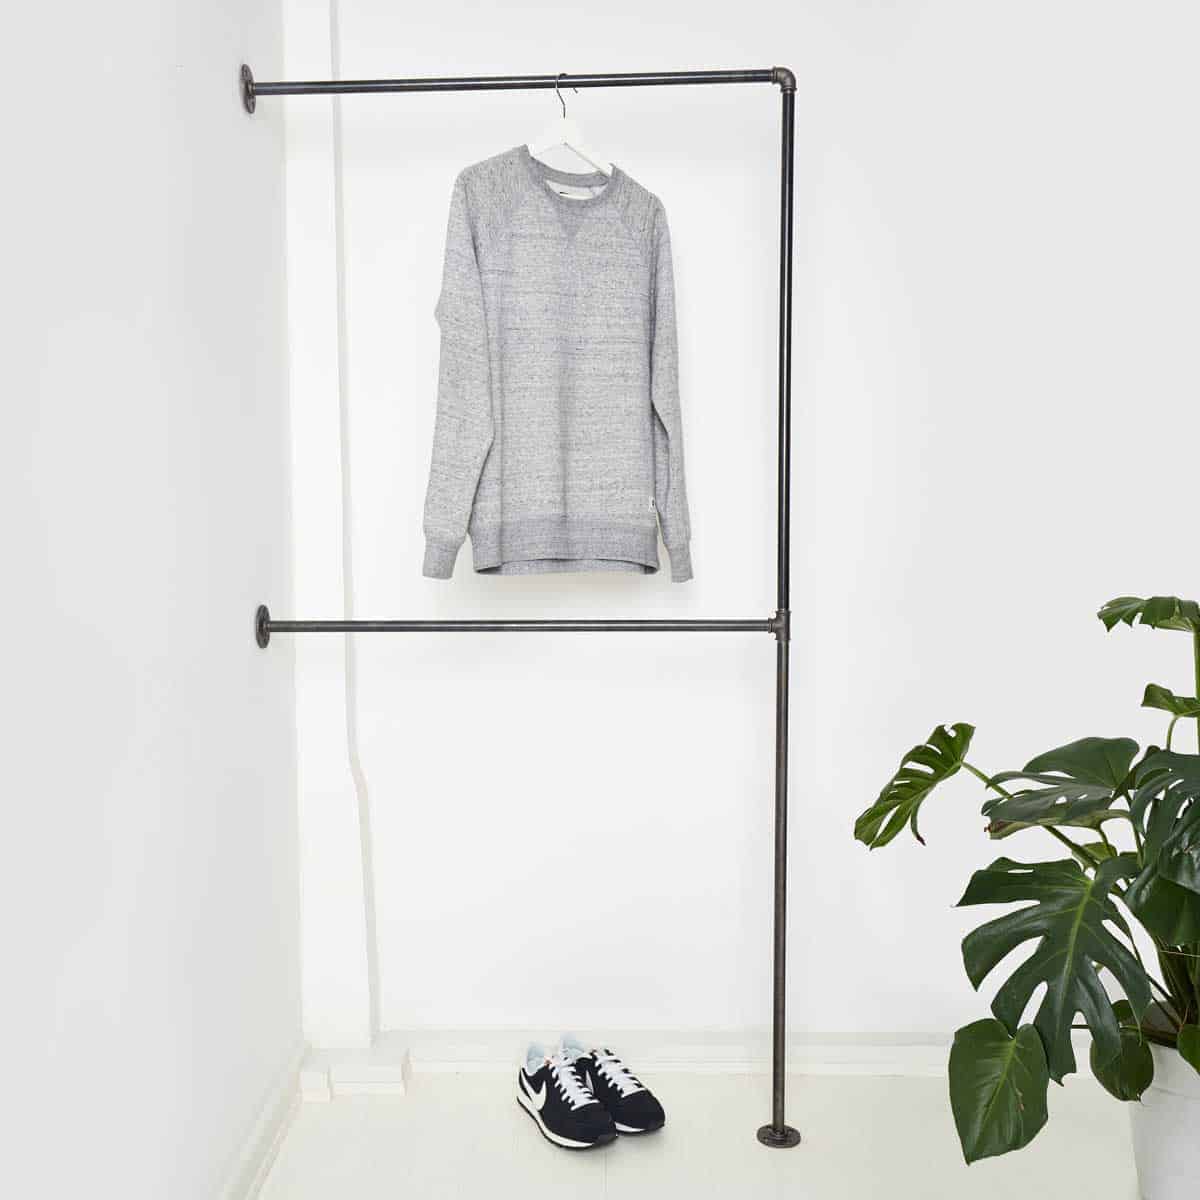 Garderobe Industriedesign Kleiderständer mit Kleiderstange doppelt aus Wasserrohr Heizungsrohr Metall Temperguss schwarz